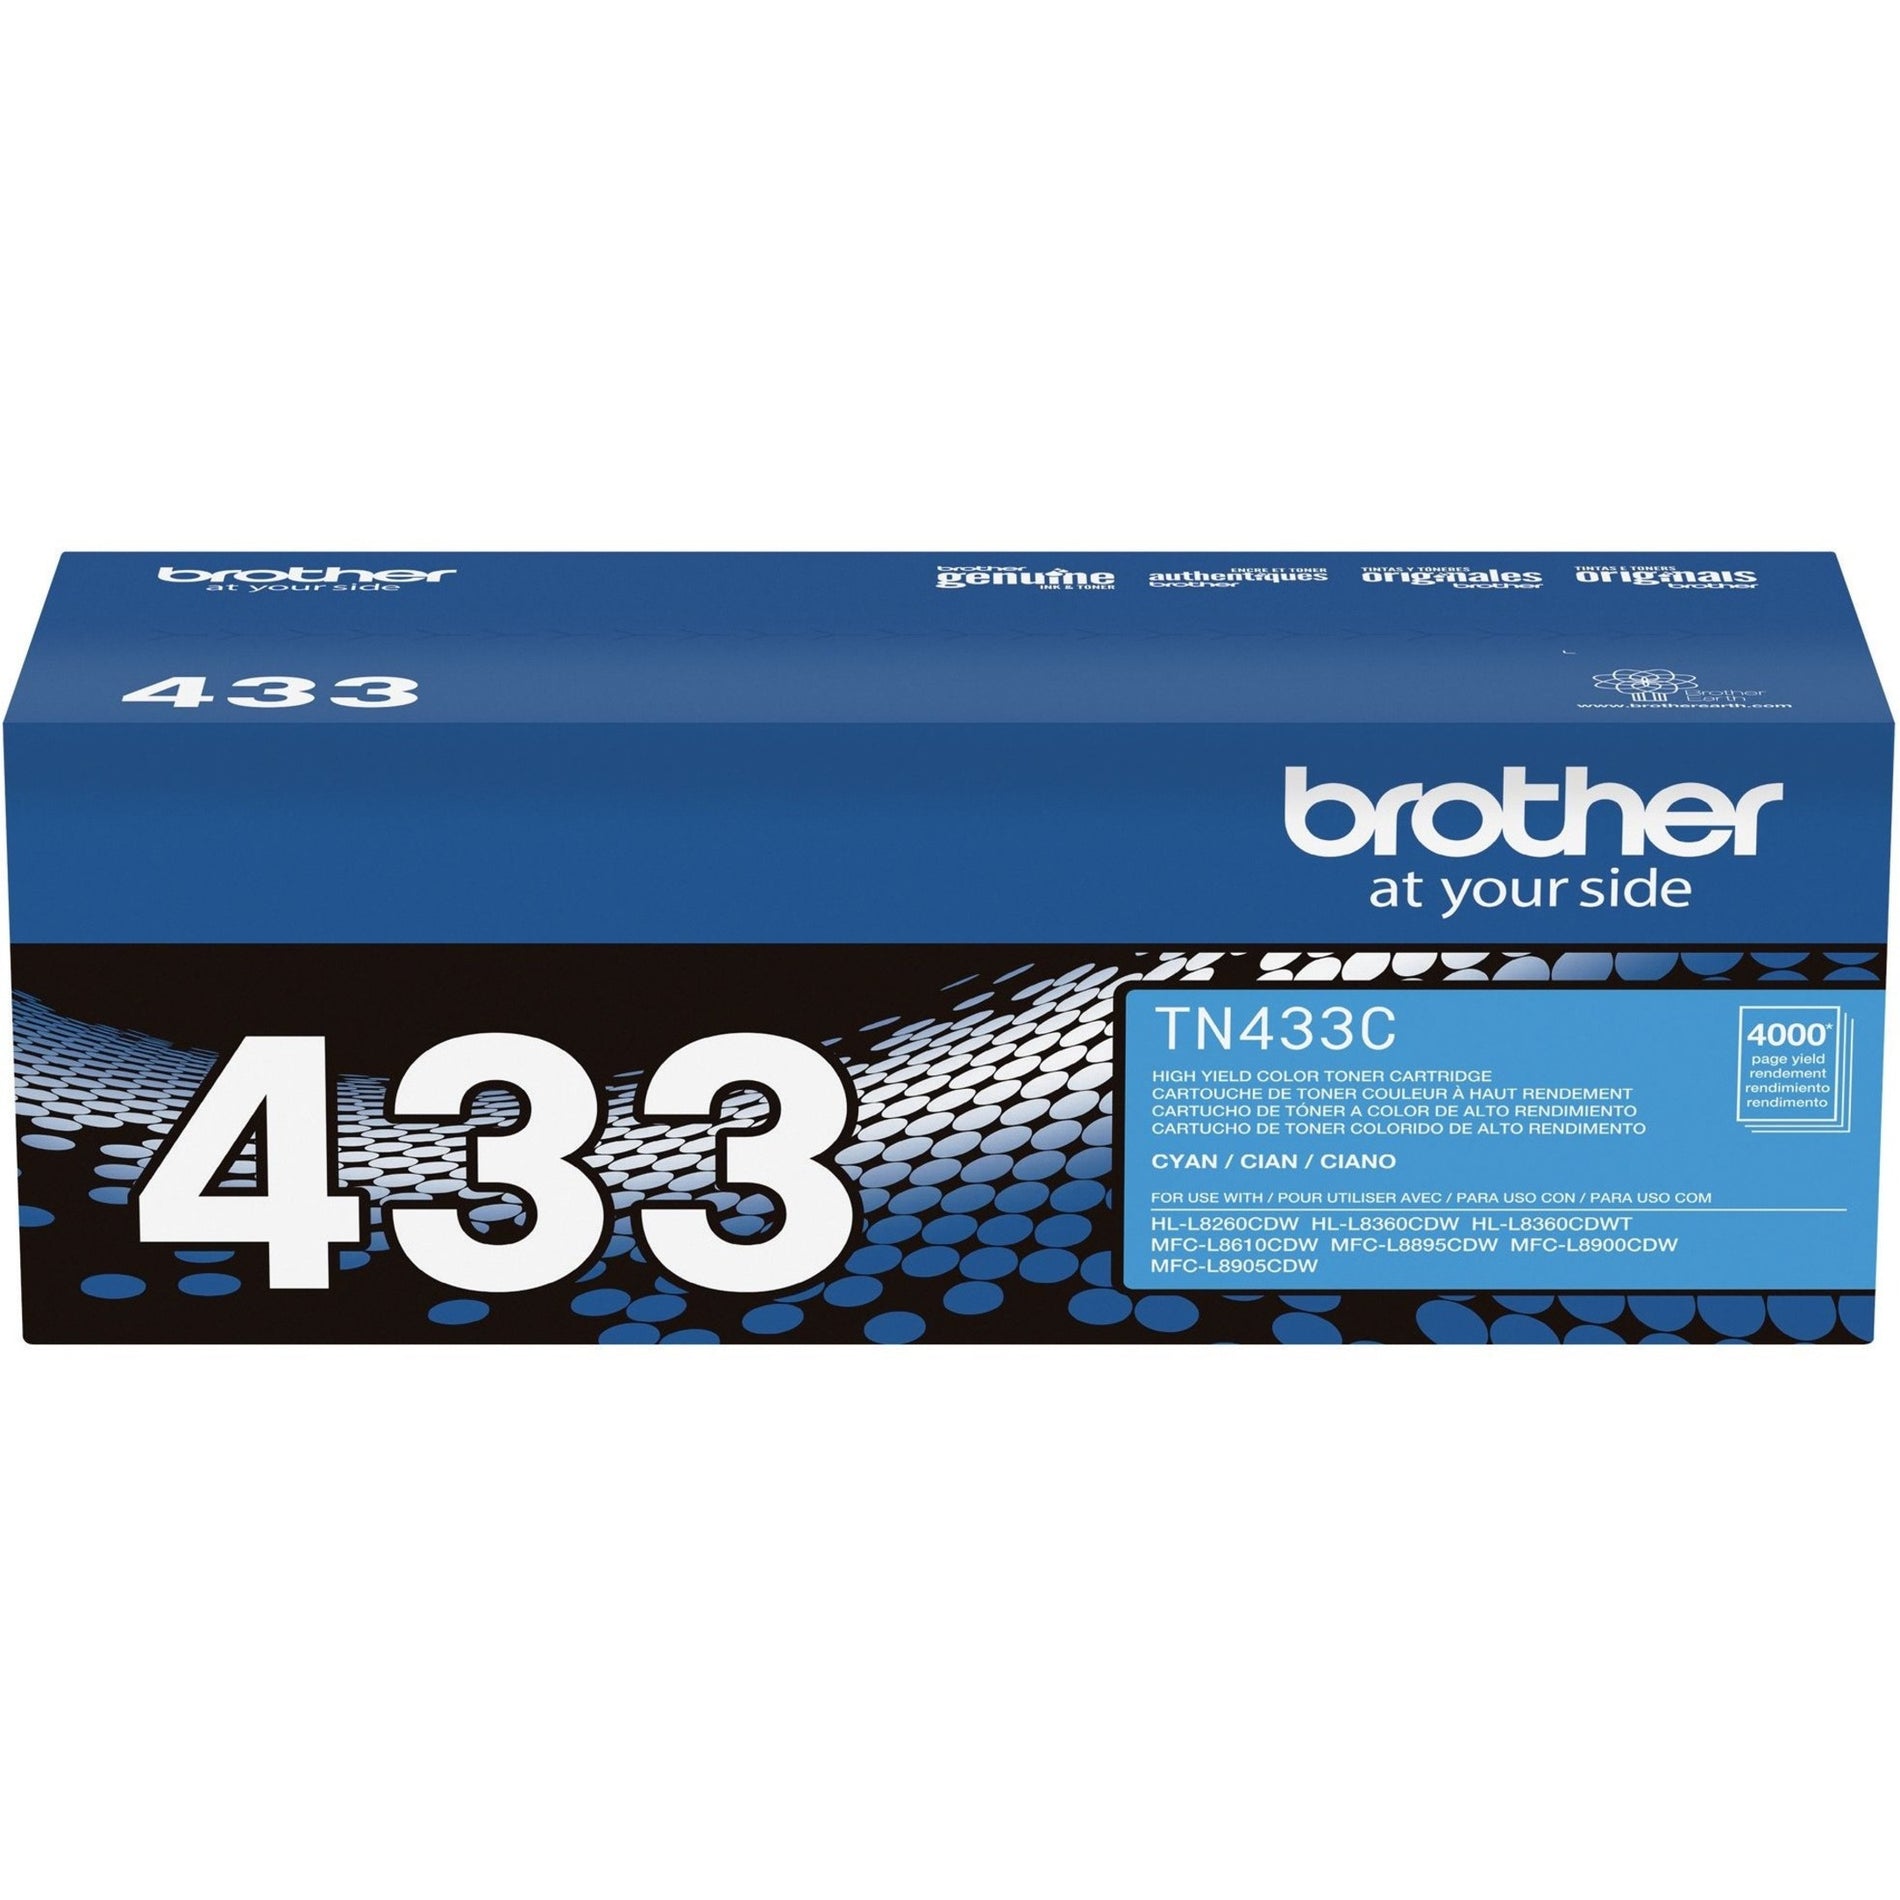 Brother TN433C Toner Cartridge, 4000 Page High Yield, Cyan